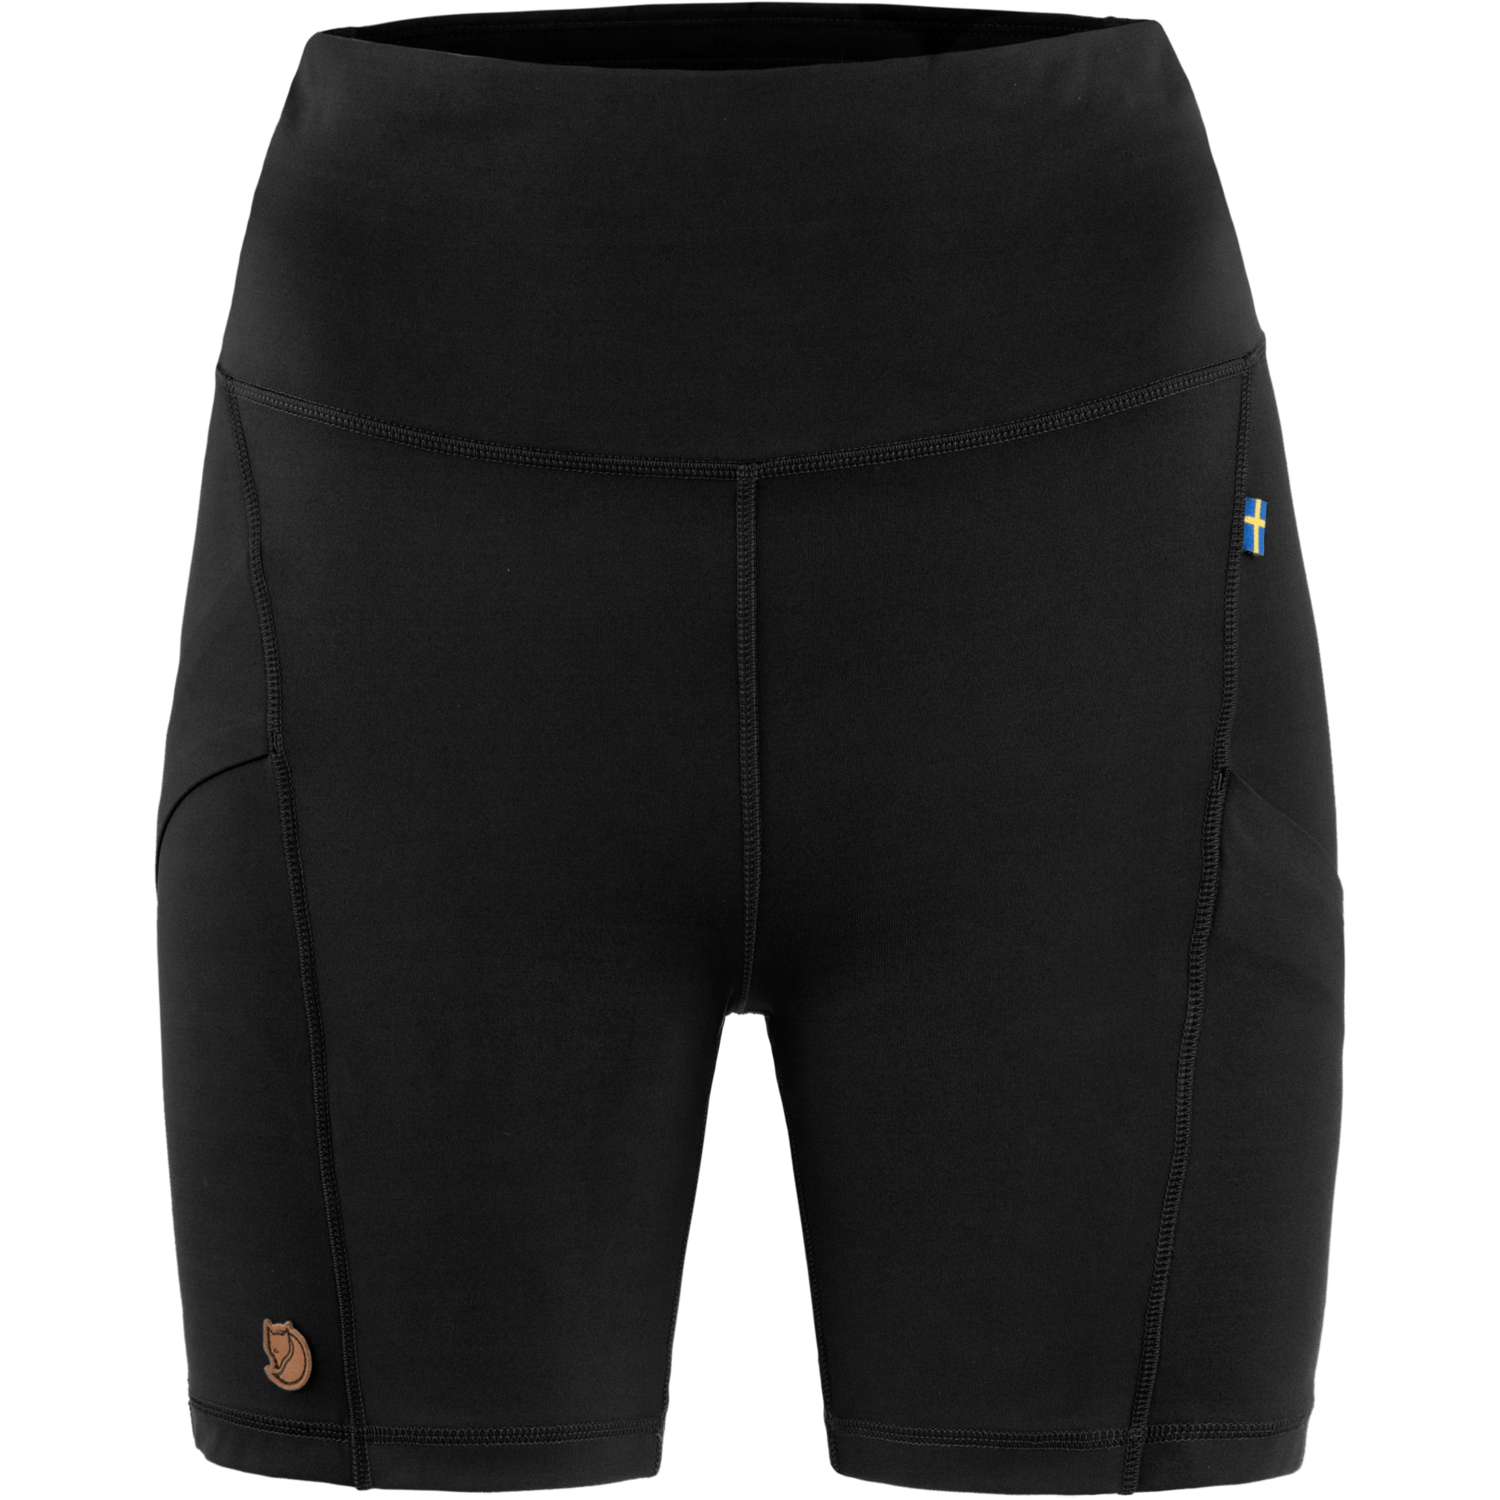 Fjällräven Women's Abisko 6 inch Shorts Tights Black